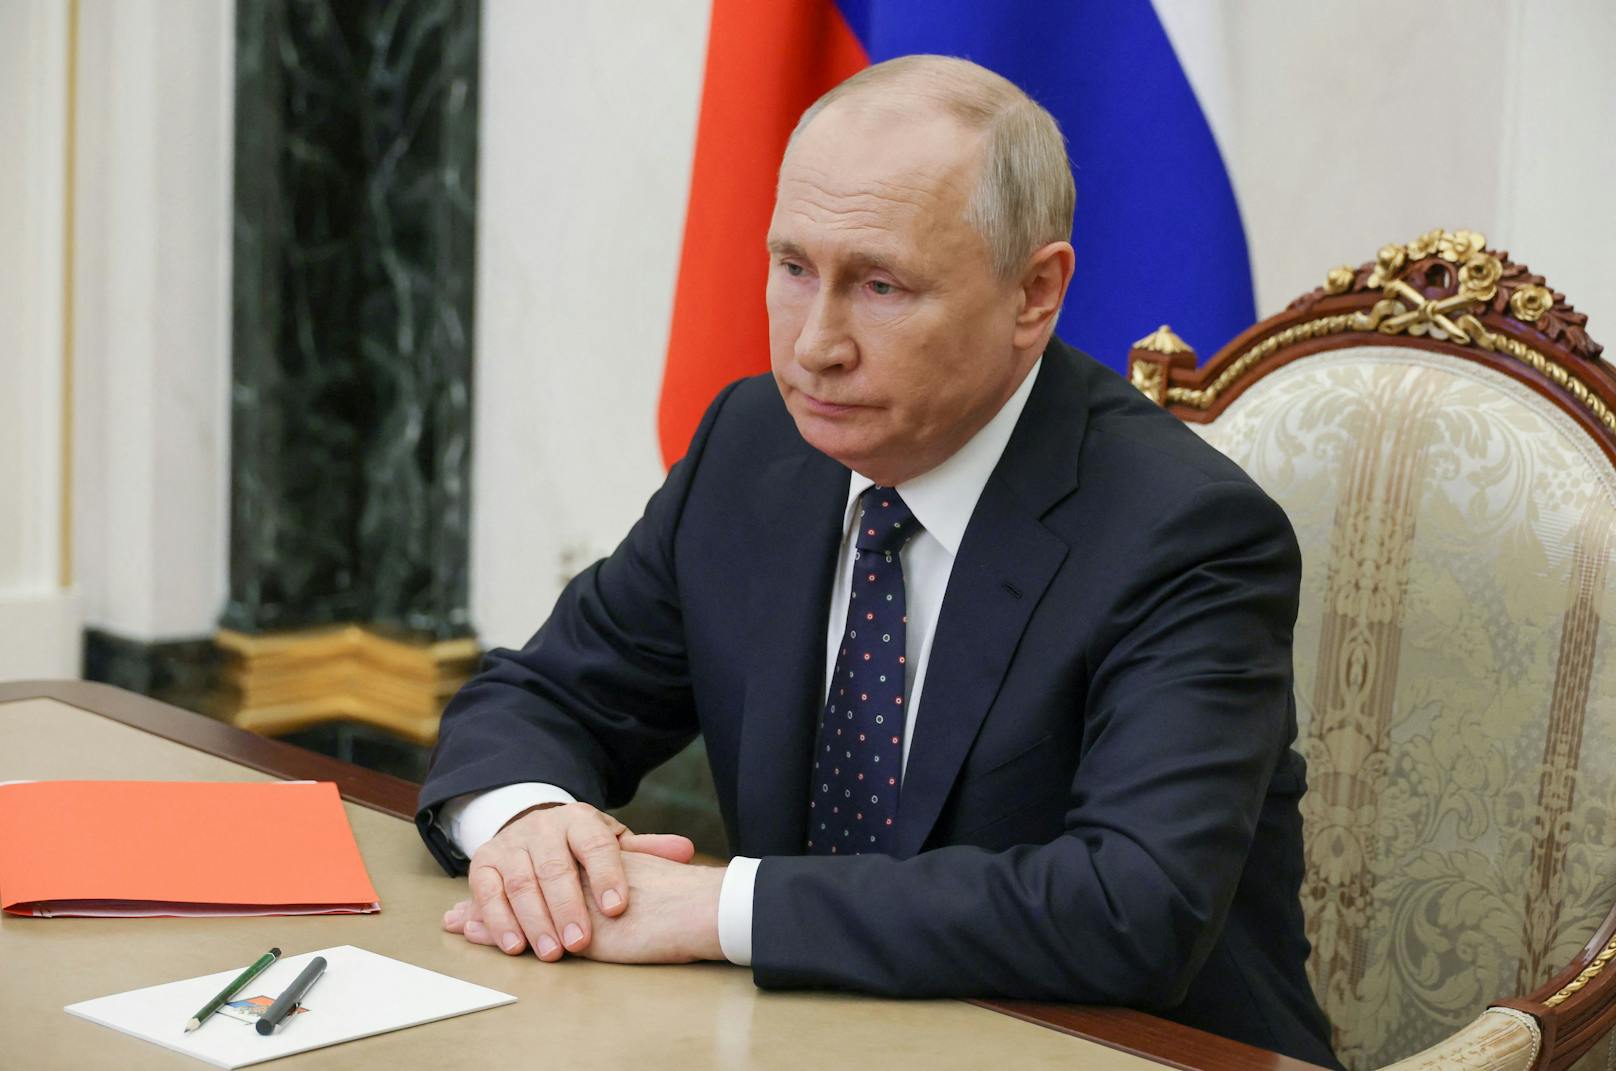 Wegen internationalem Haftbefehl: G20-Gipfel ohne Putin